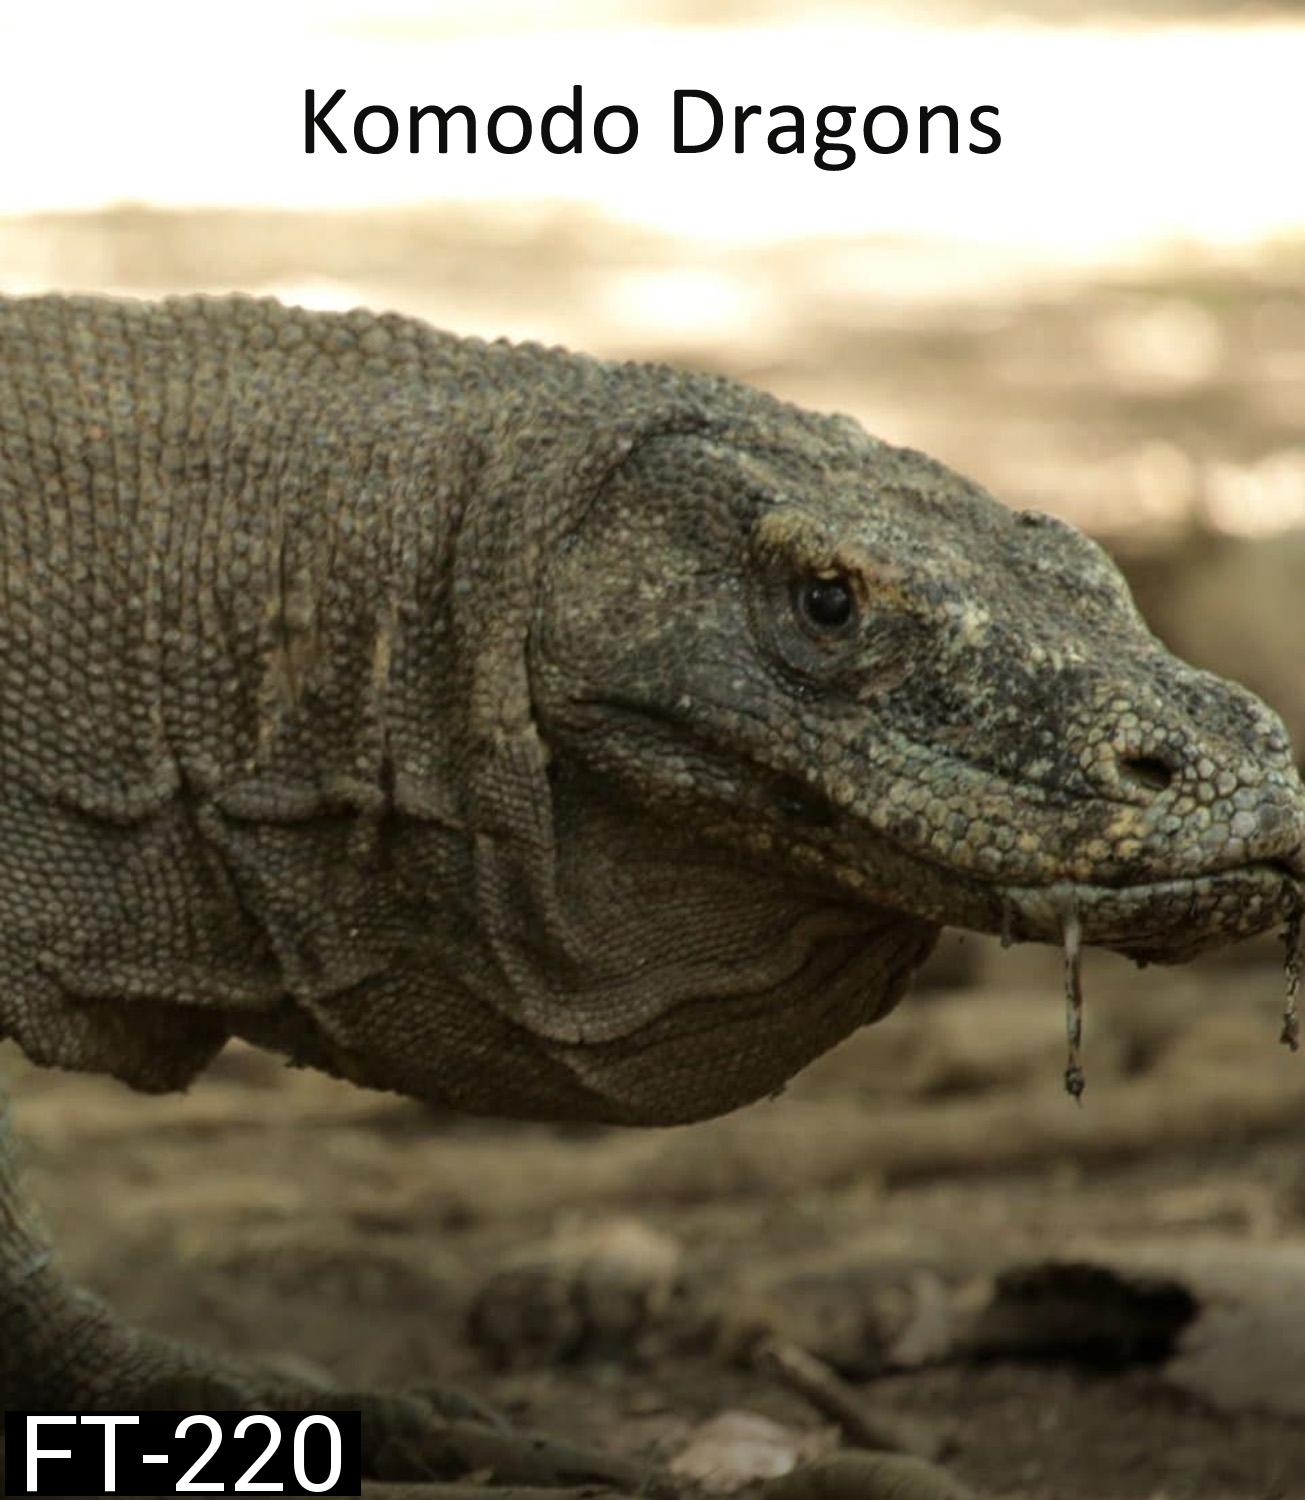 มังกรโกโมโด Komodo Dragons (2007)